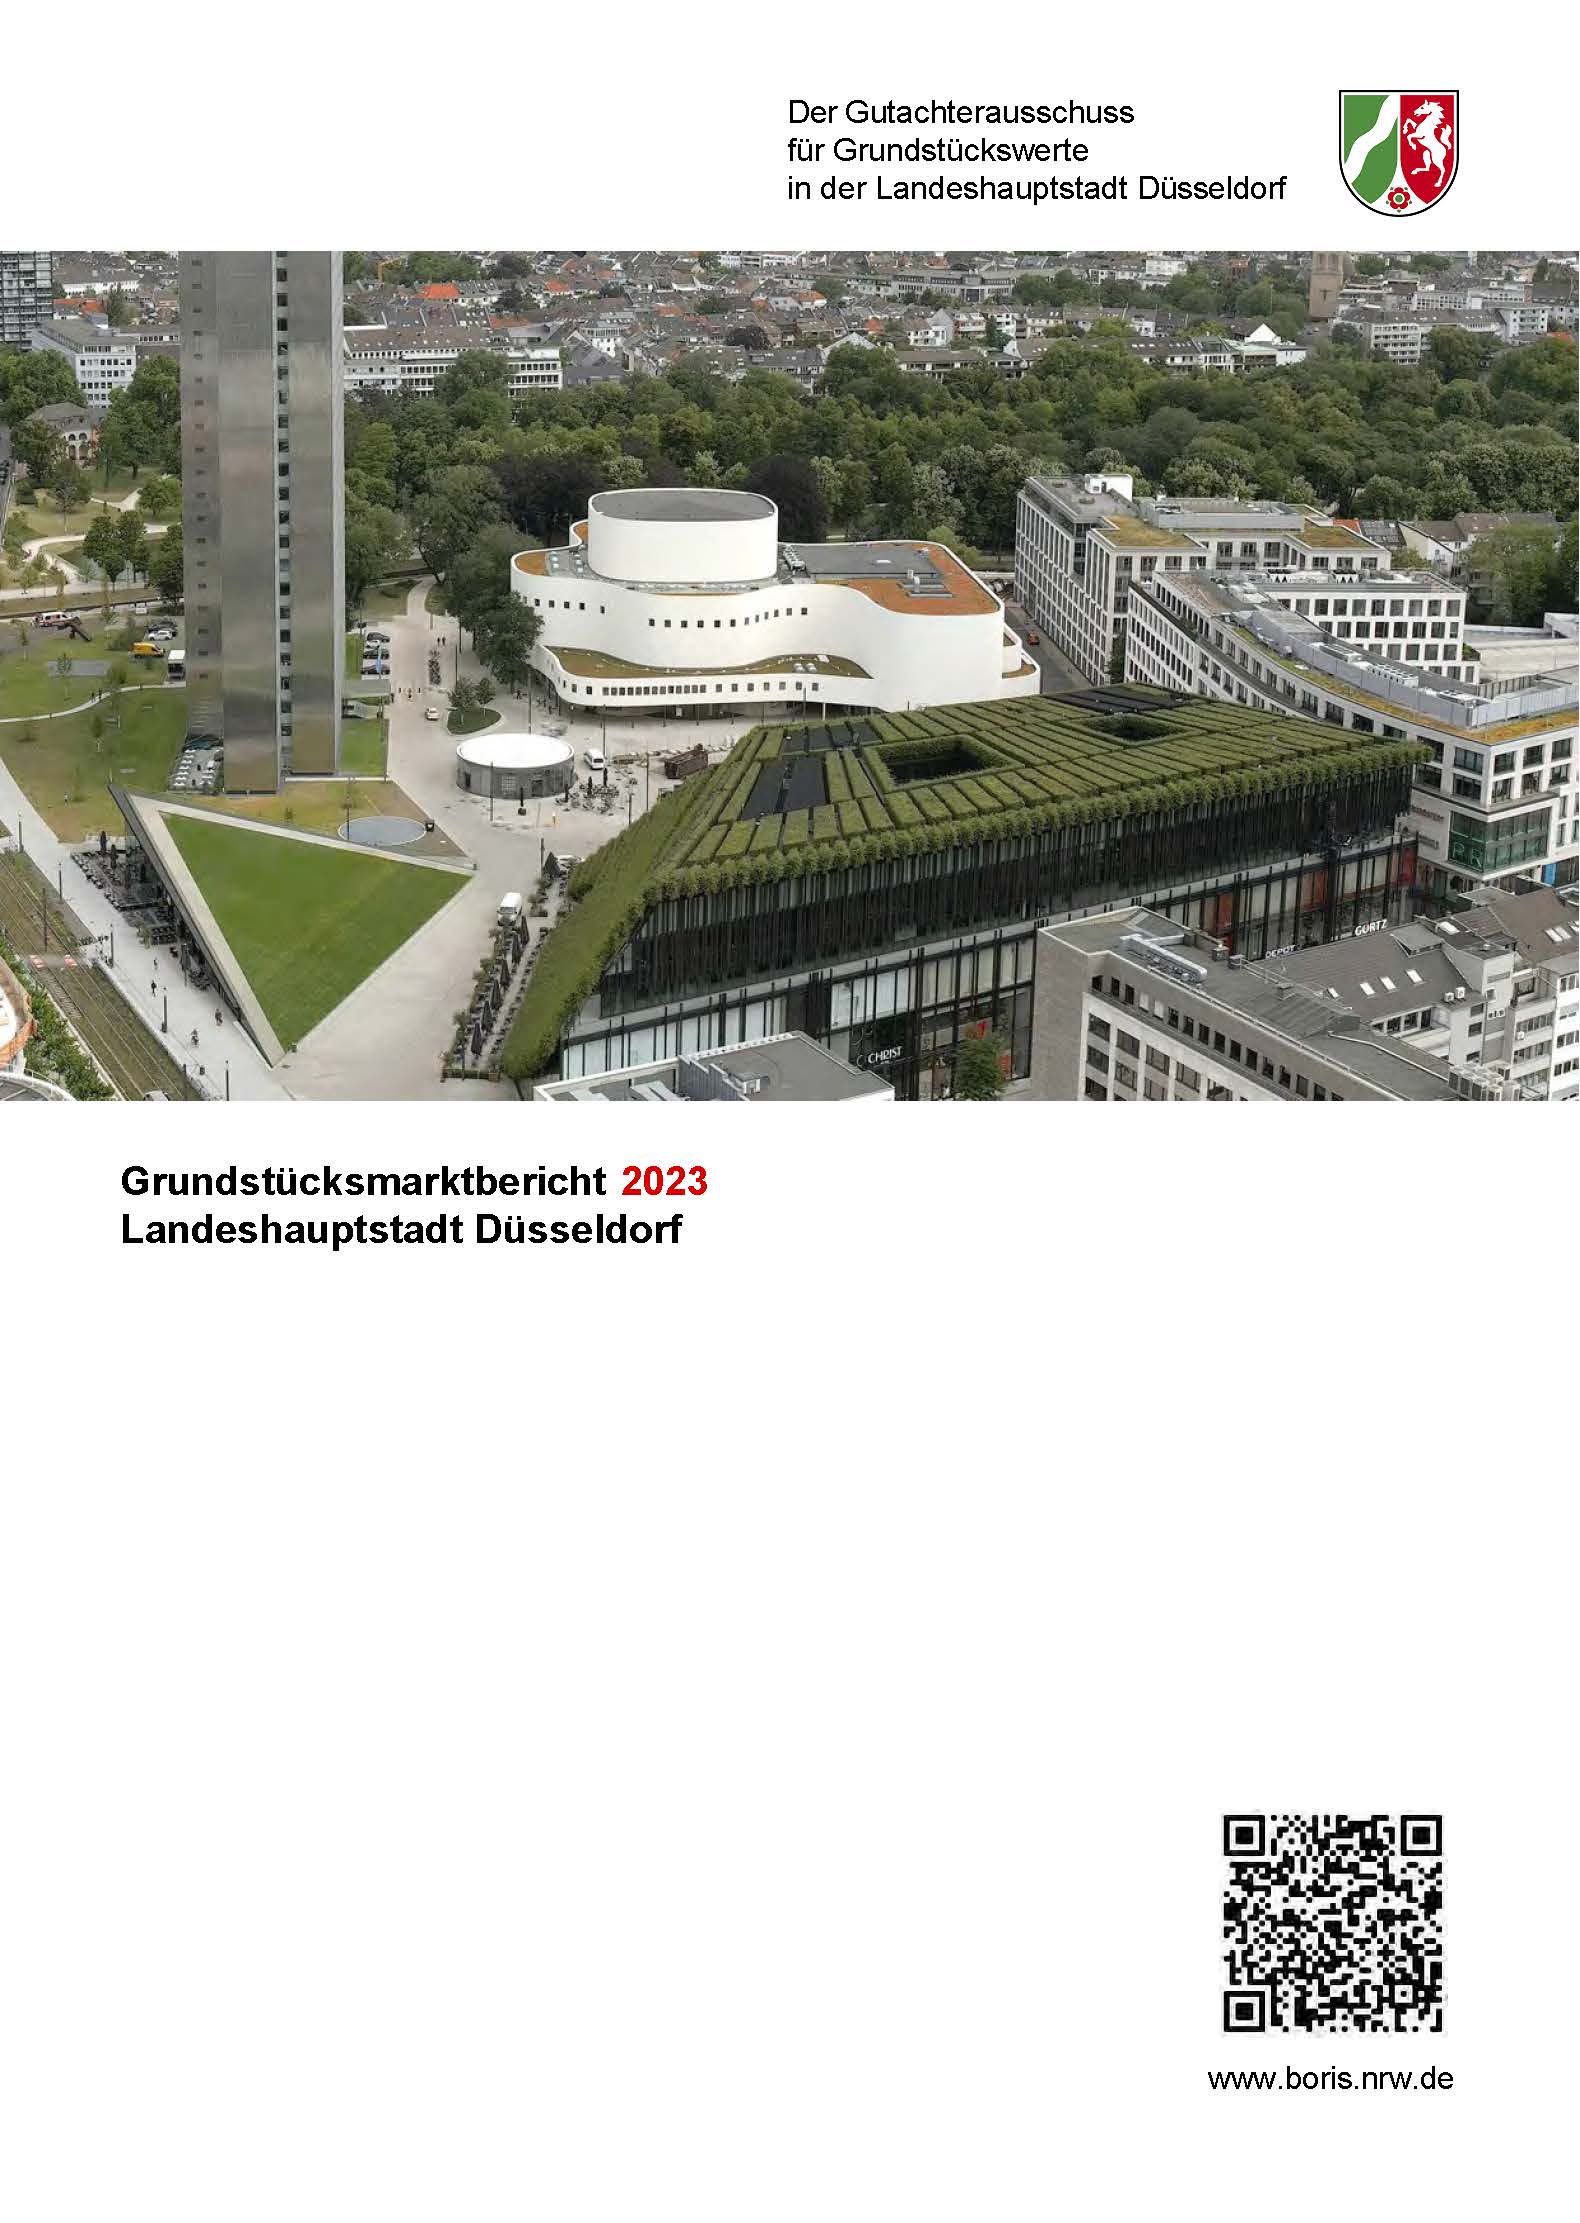 Grundstücksmarktbericht 2023 für die Stadt Düsseldorf